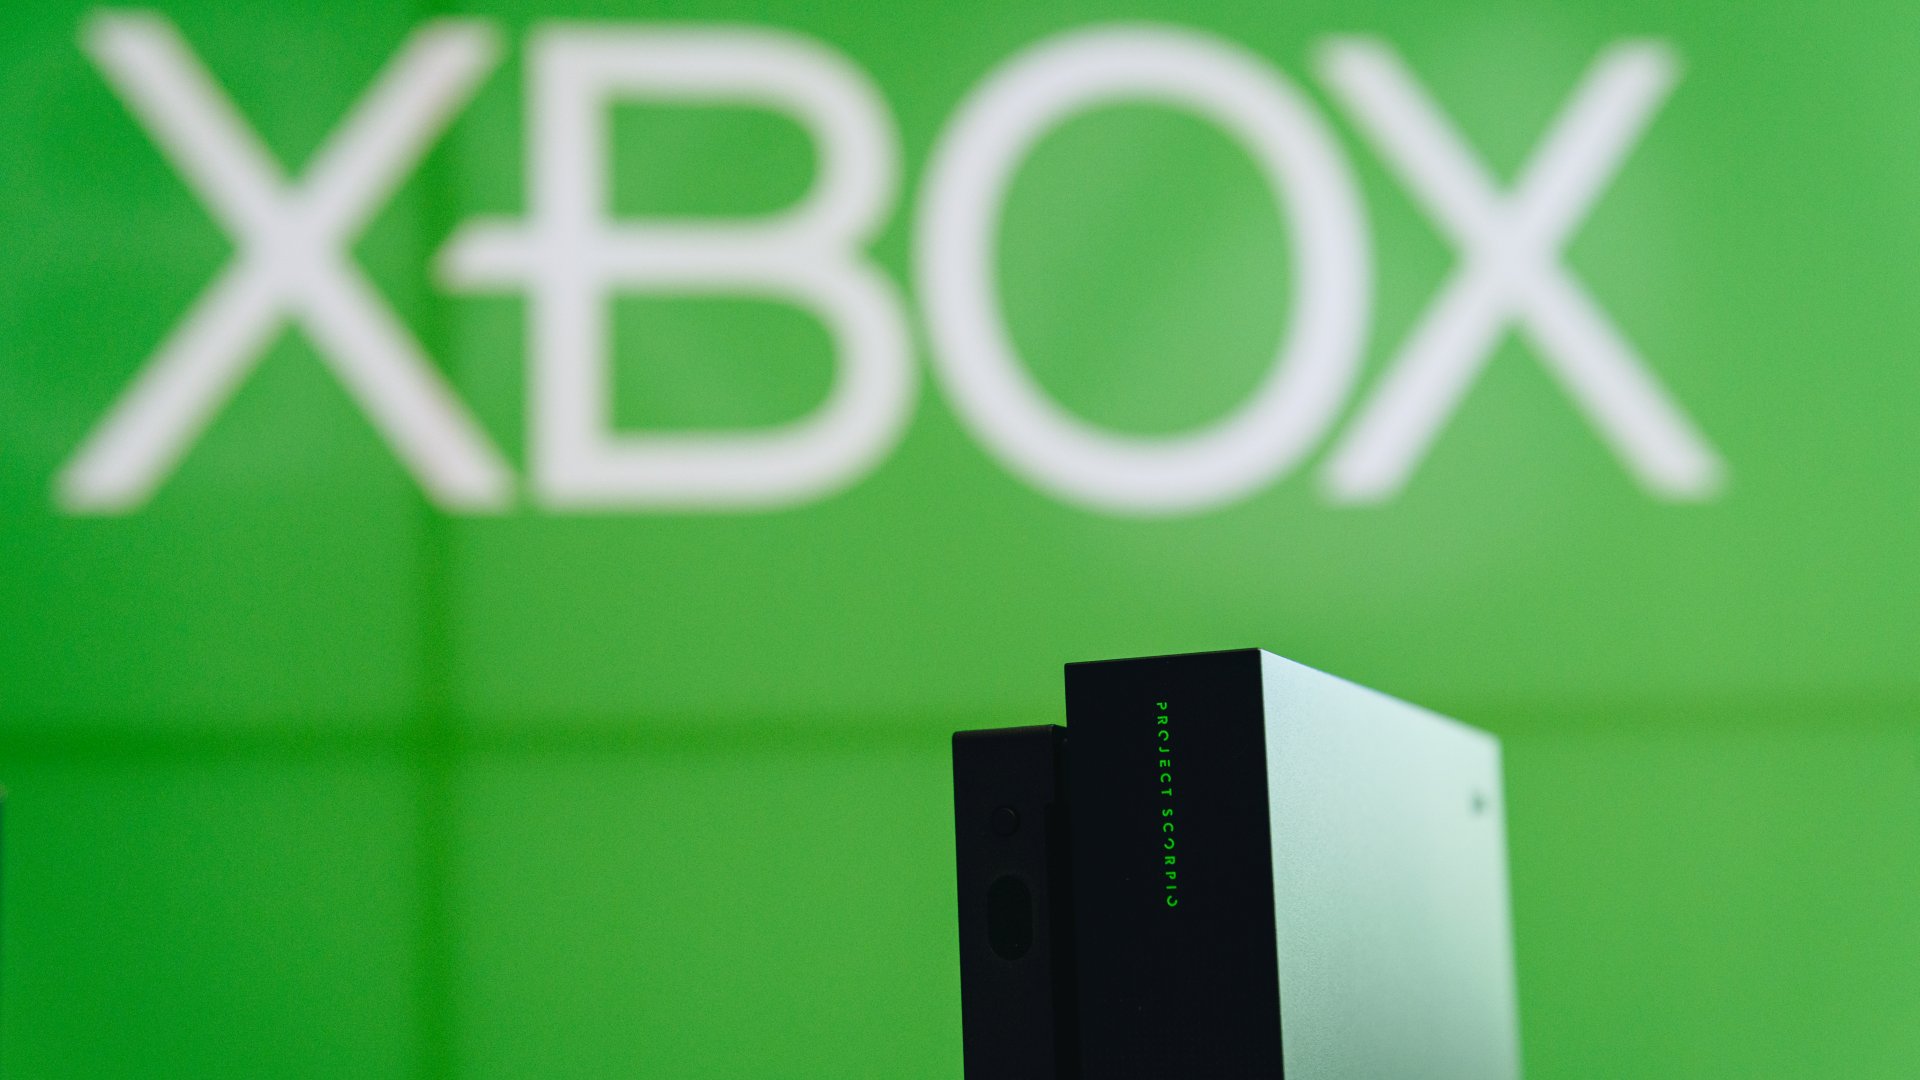 Xbox One X Explaining 4K Article Image